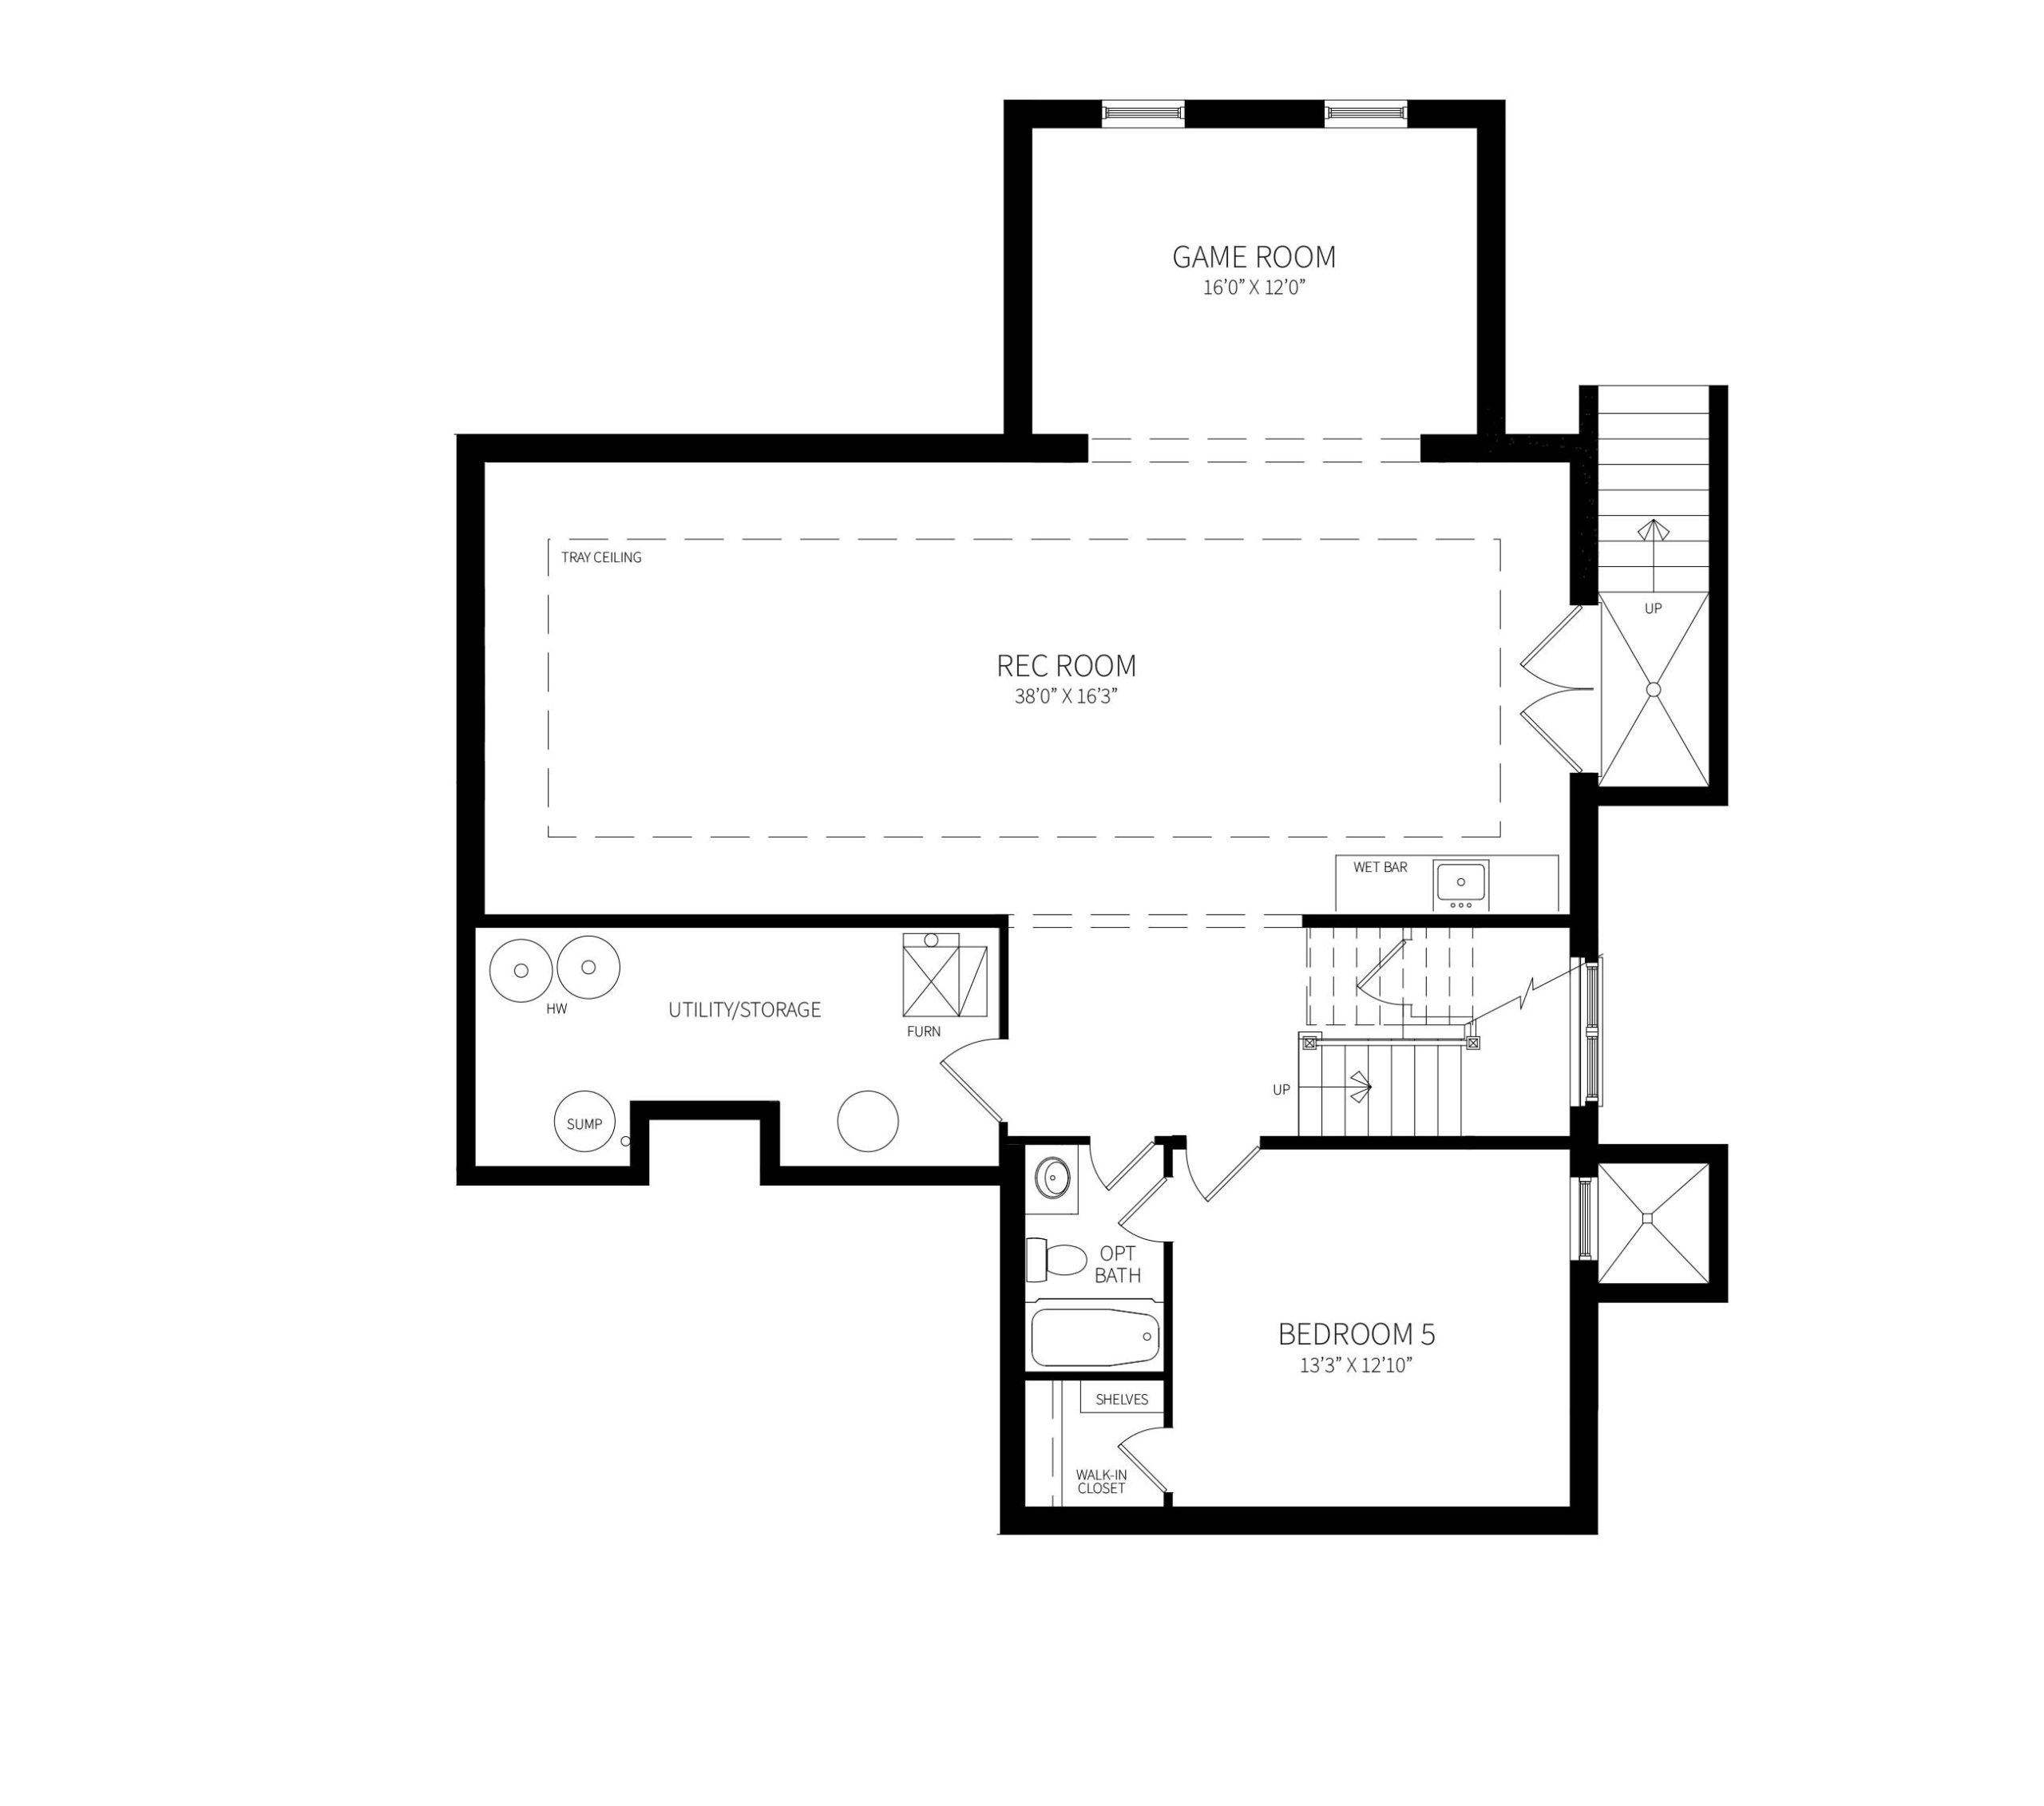 Wilmett model basement floor plan with Rec Room, Game Room wet bar and bedroom with bath.